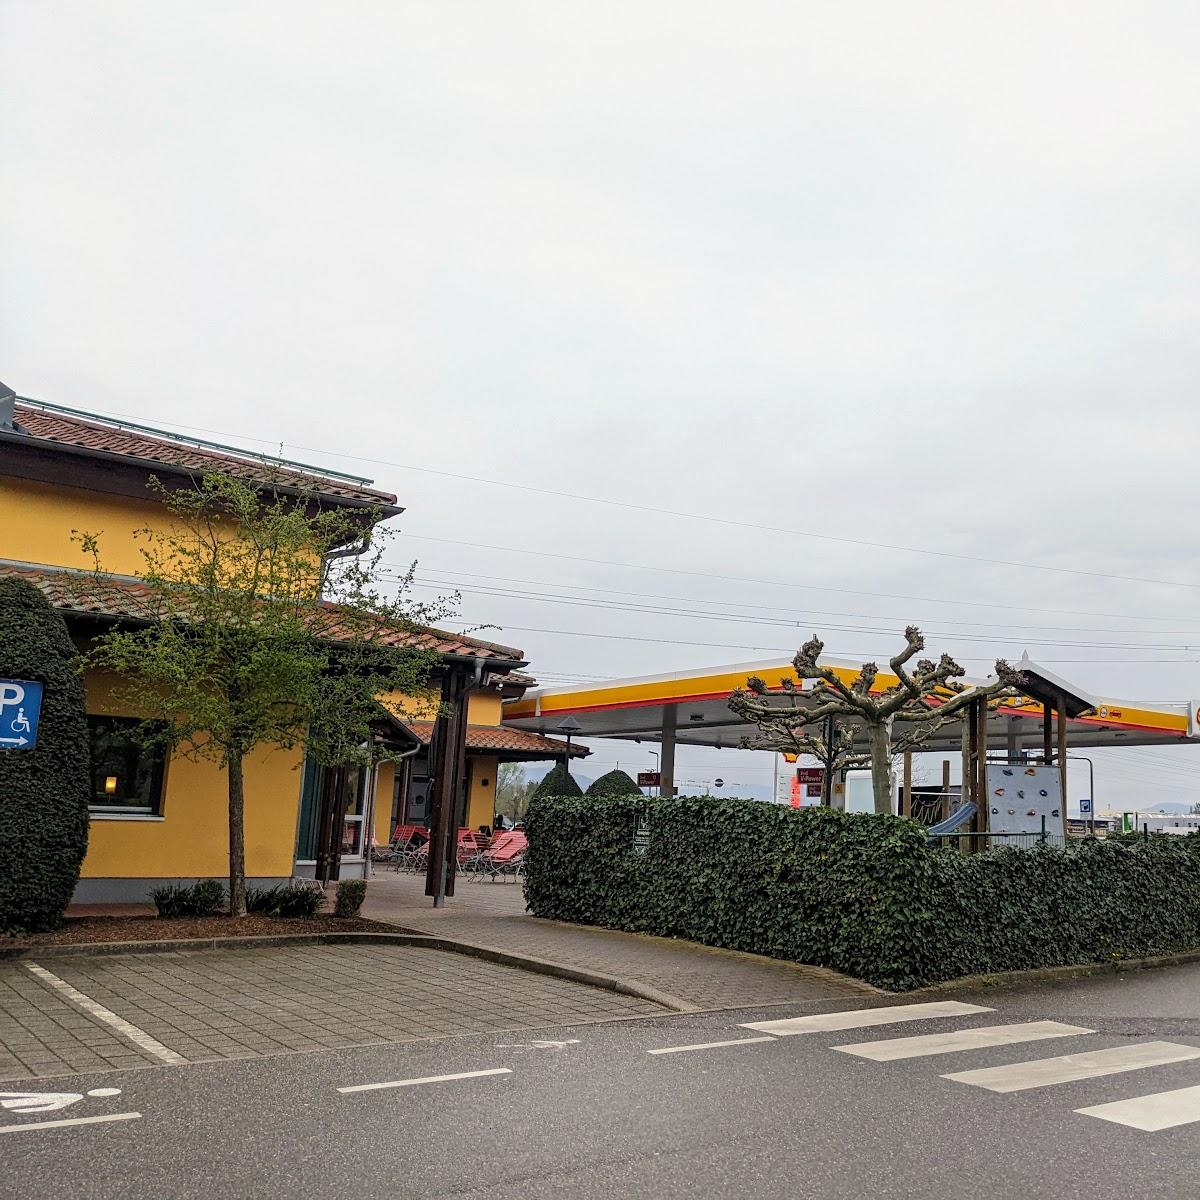 Restaurant "Autohof" in Achern